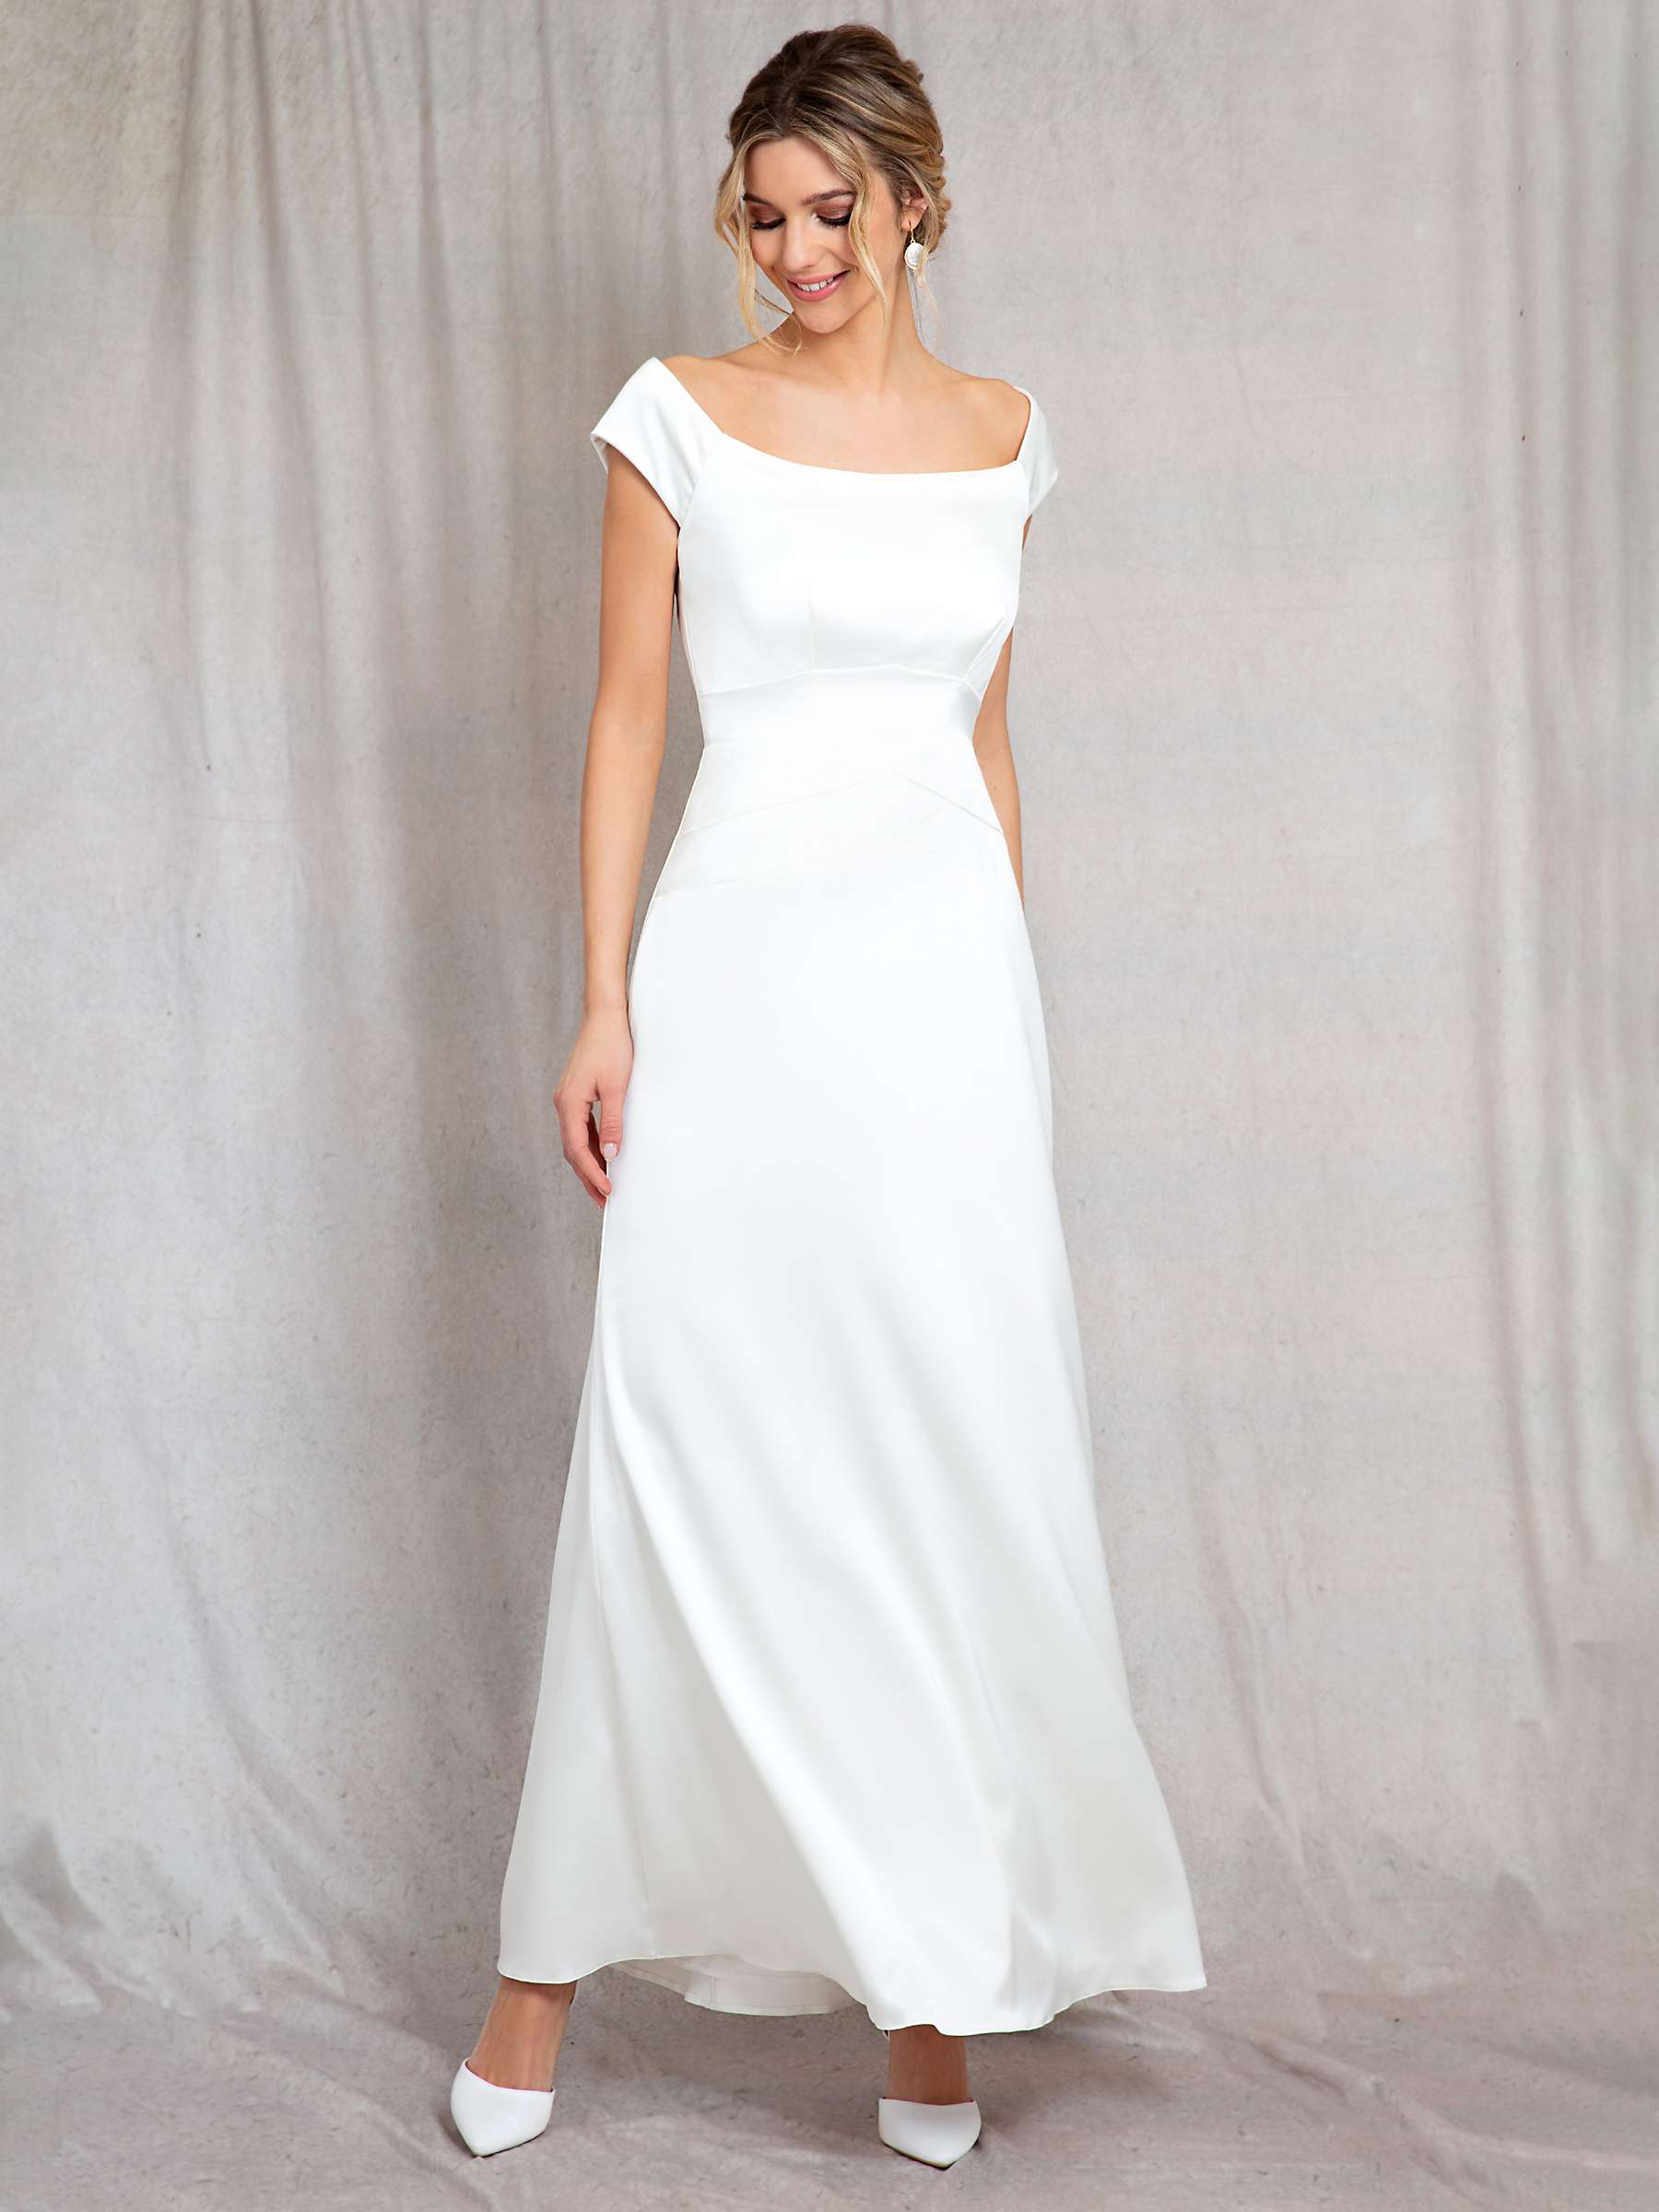 Buy Alie Street Jasmine Off The Shoulder Gown, Ivory Online at johnlewis.com